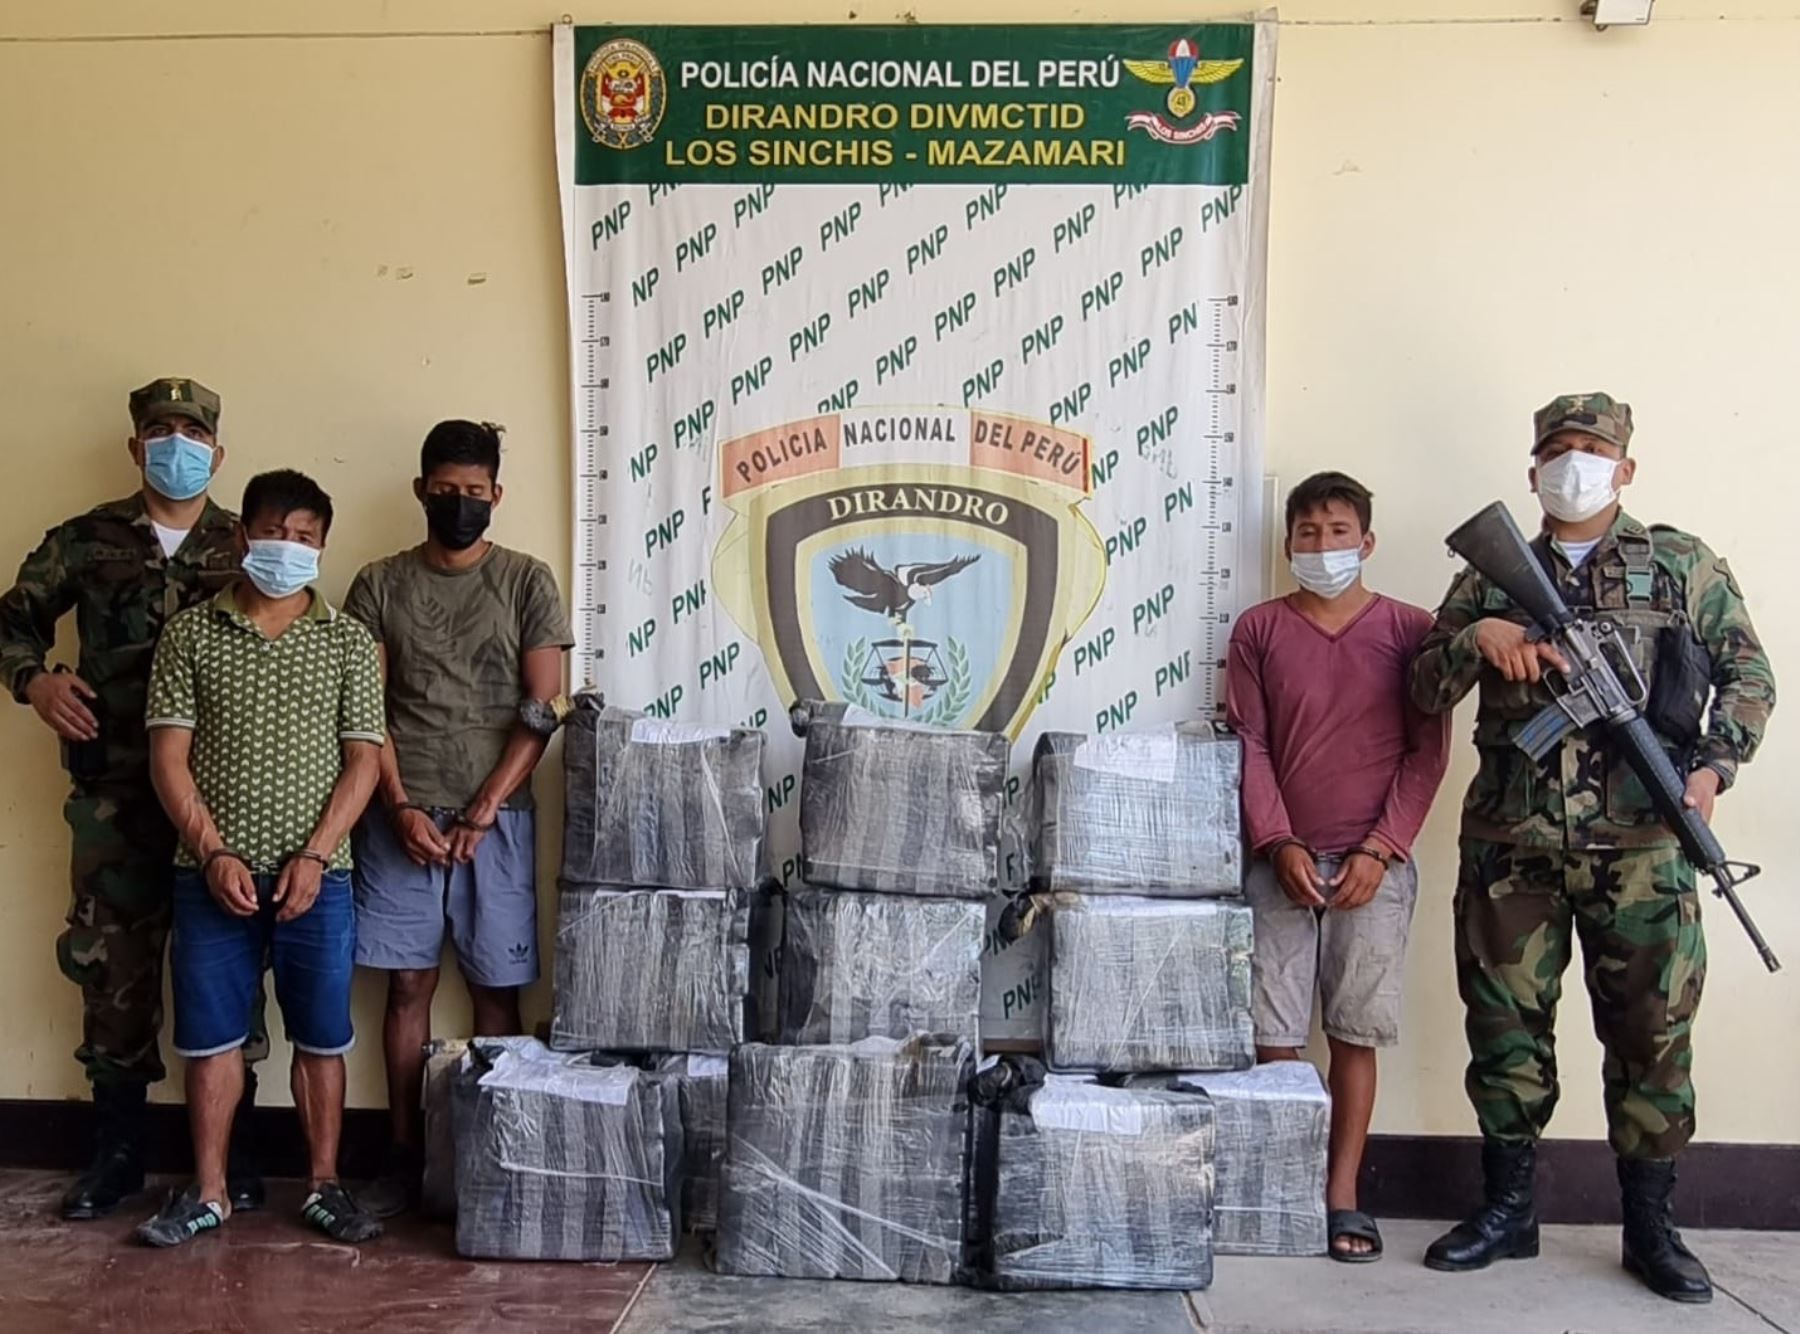 Policía incauta más de 400 kg de alcaloide de cocaína y detuvo a cinco personas en operativo ejecutado en el distrito de Río Tambo, provincia de Satipo, en el ámbito del Vraem.